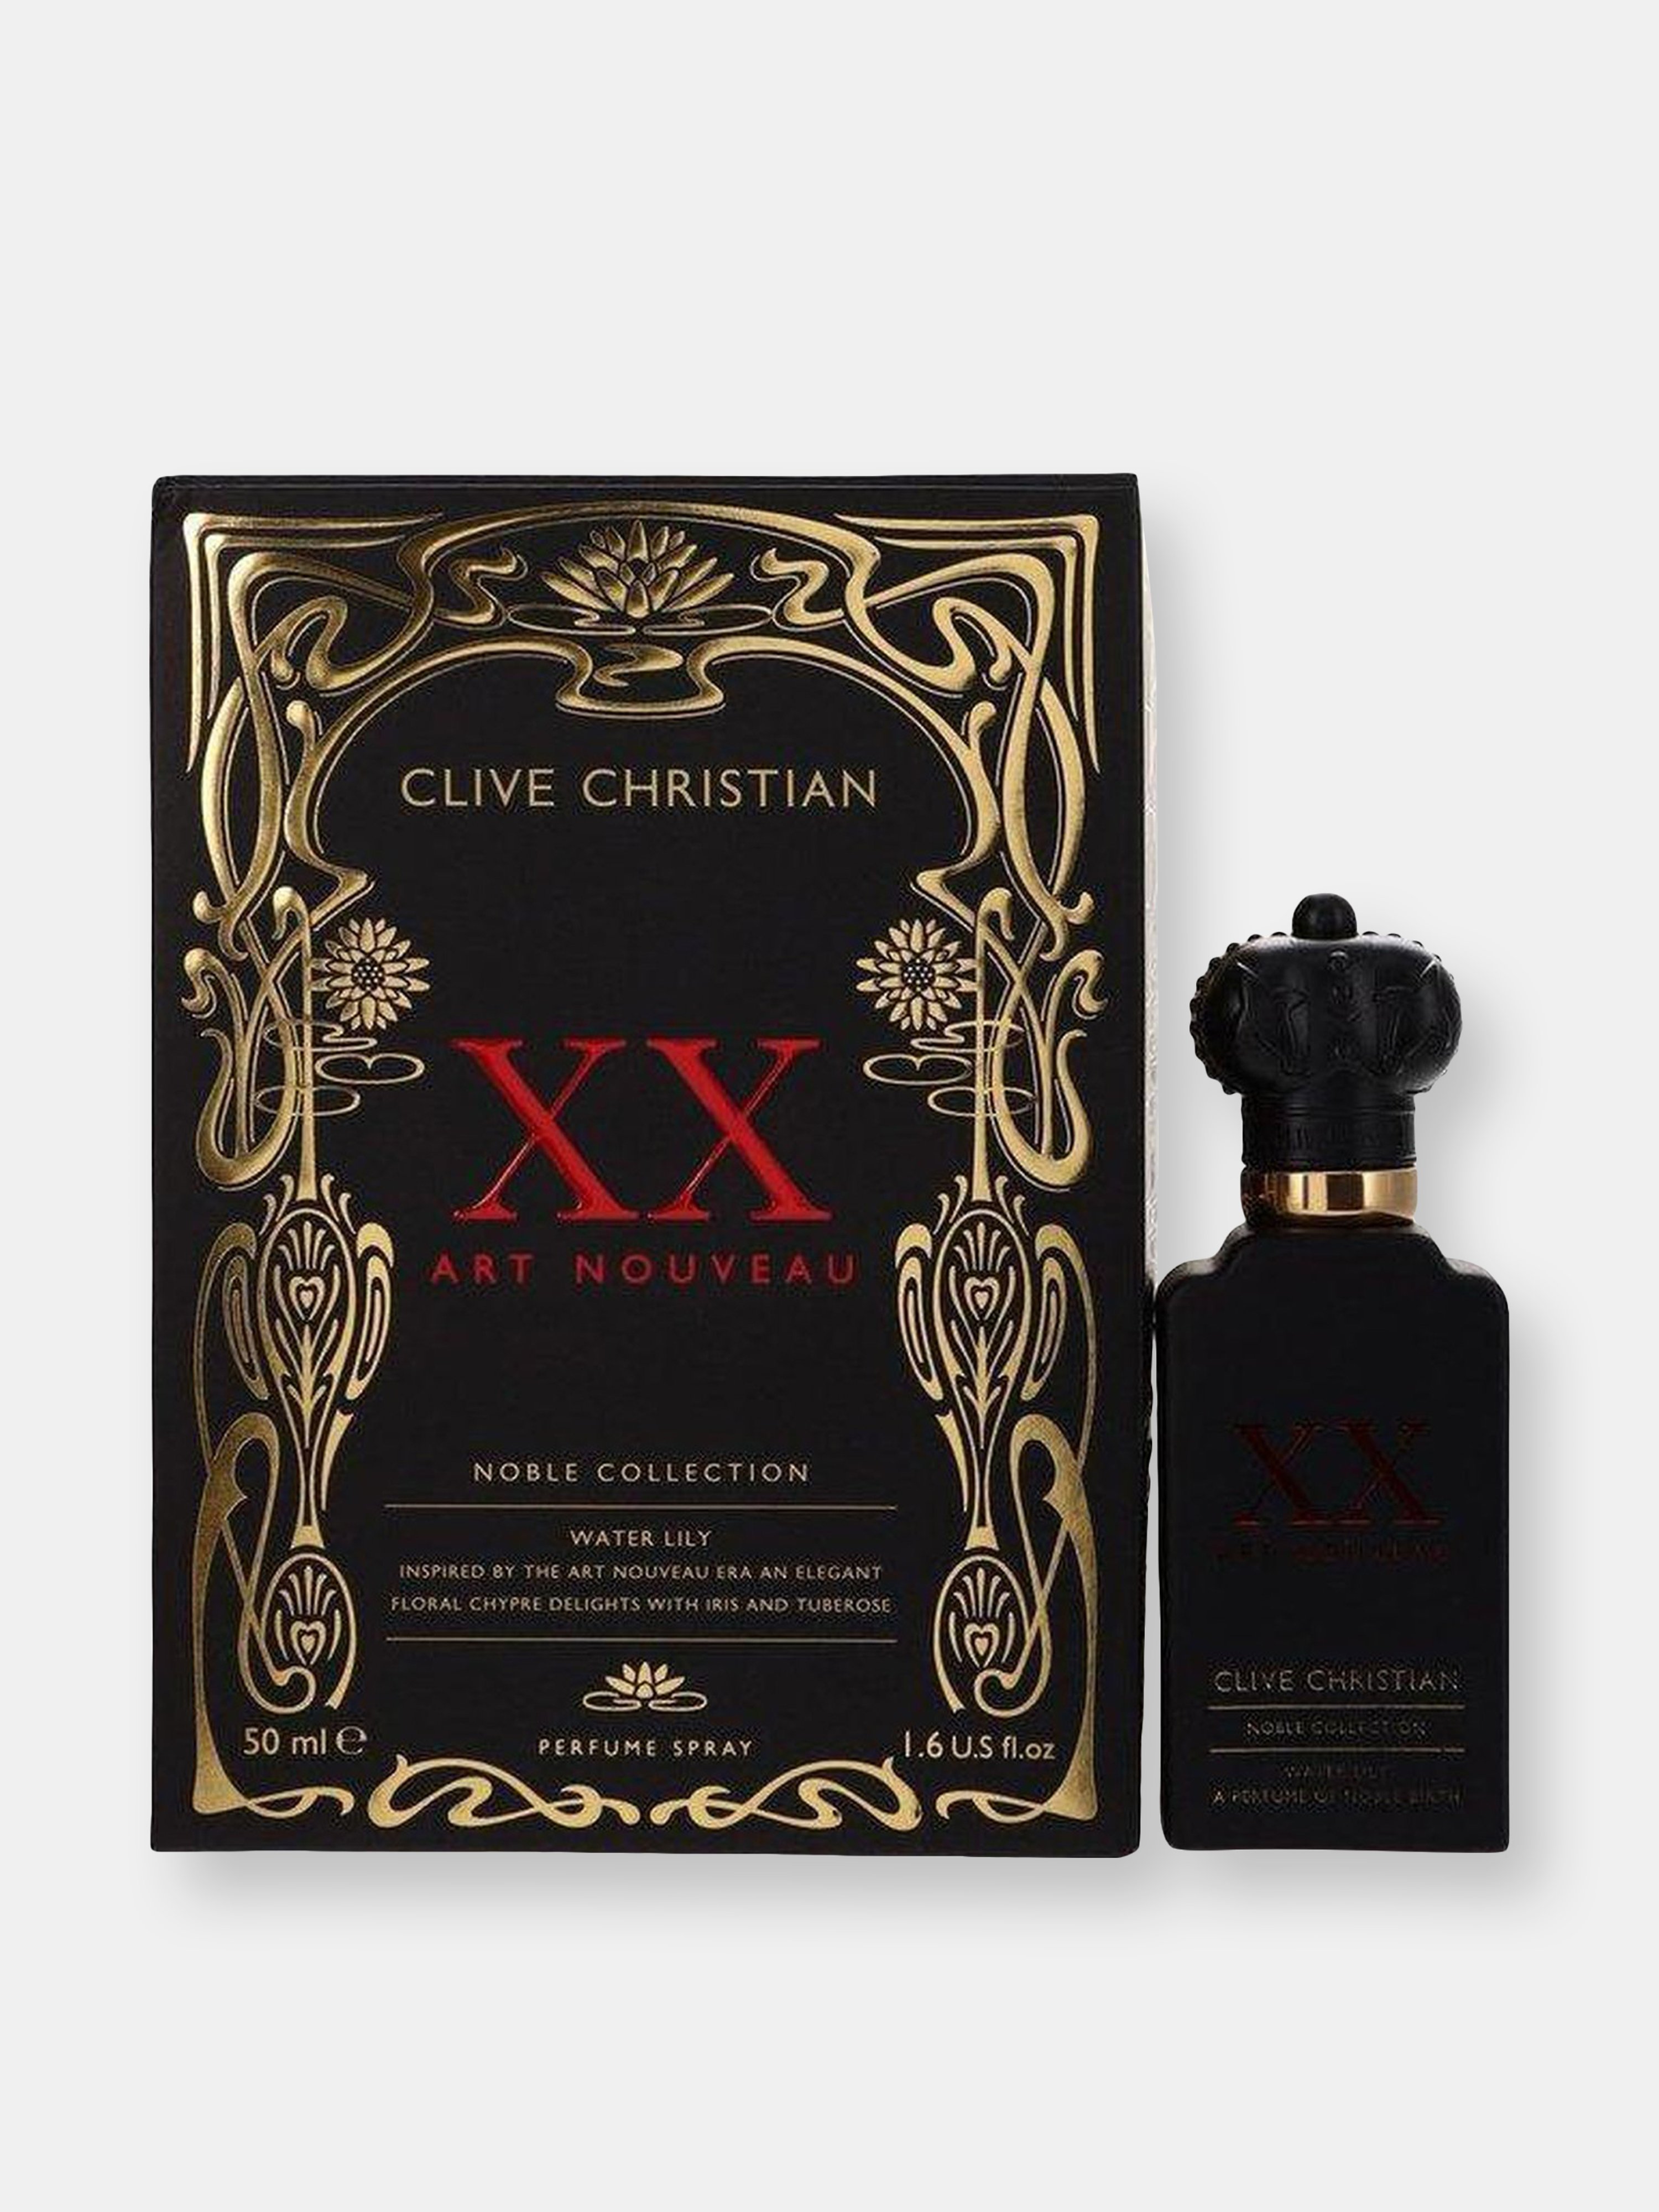 Clive Christian Xx Art Nouveau Water Lily